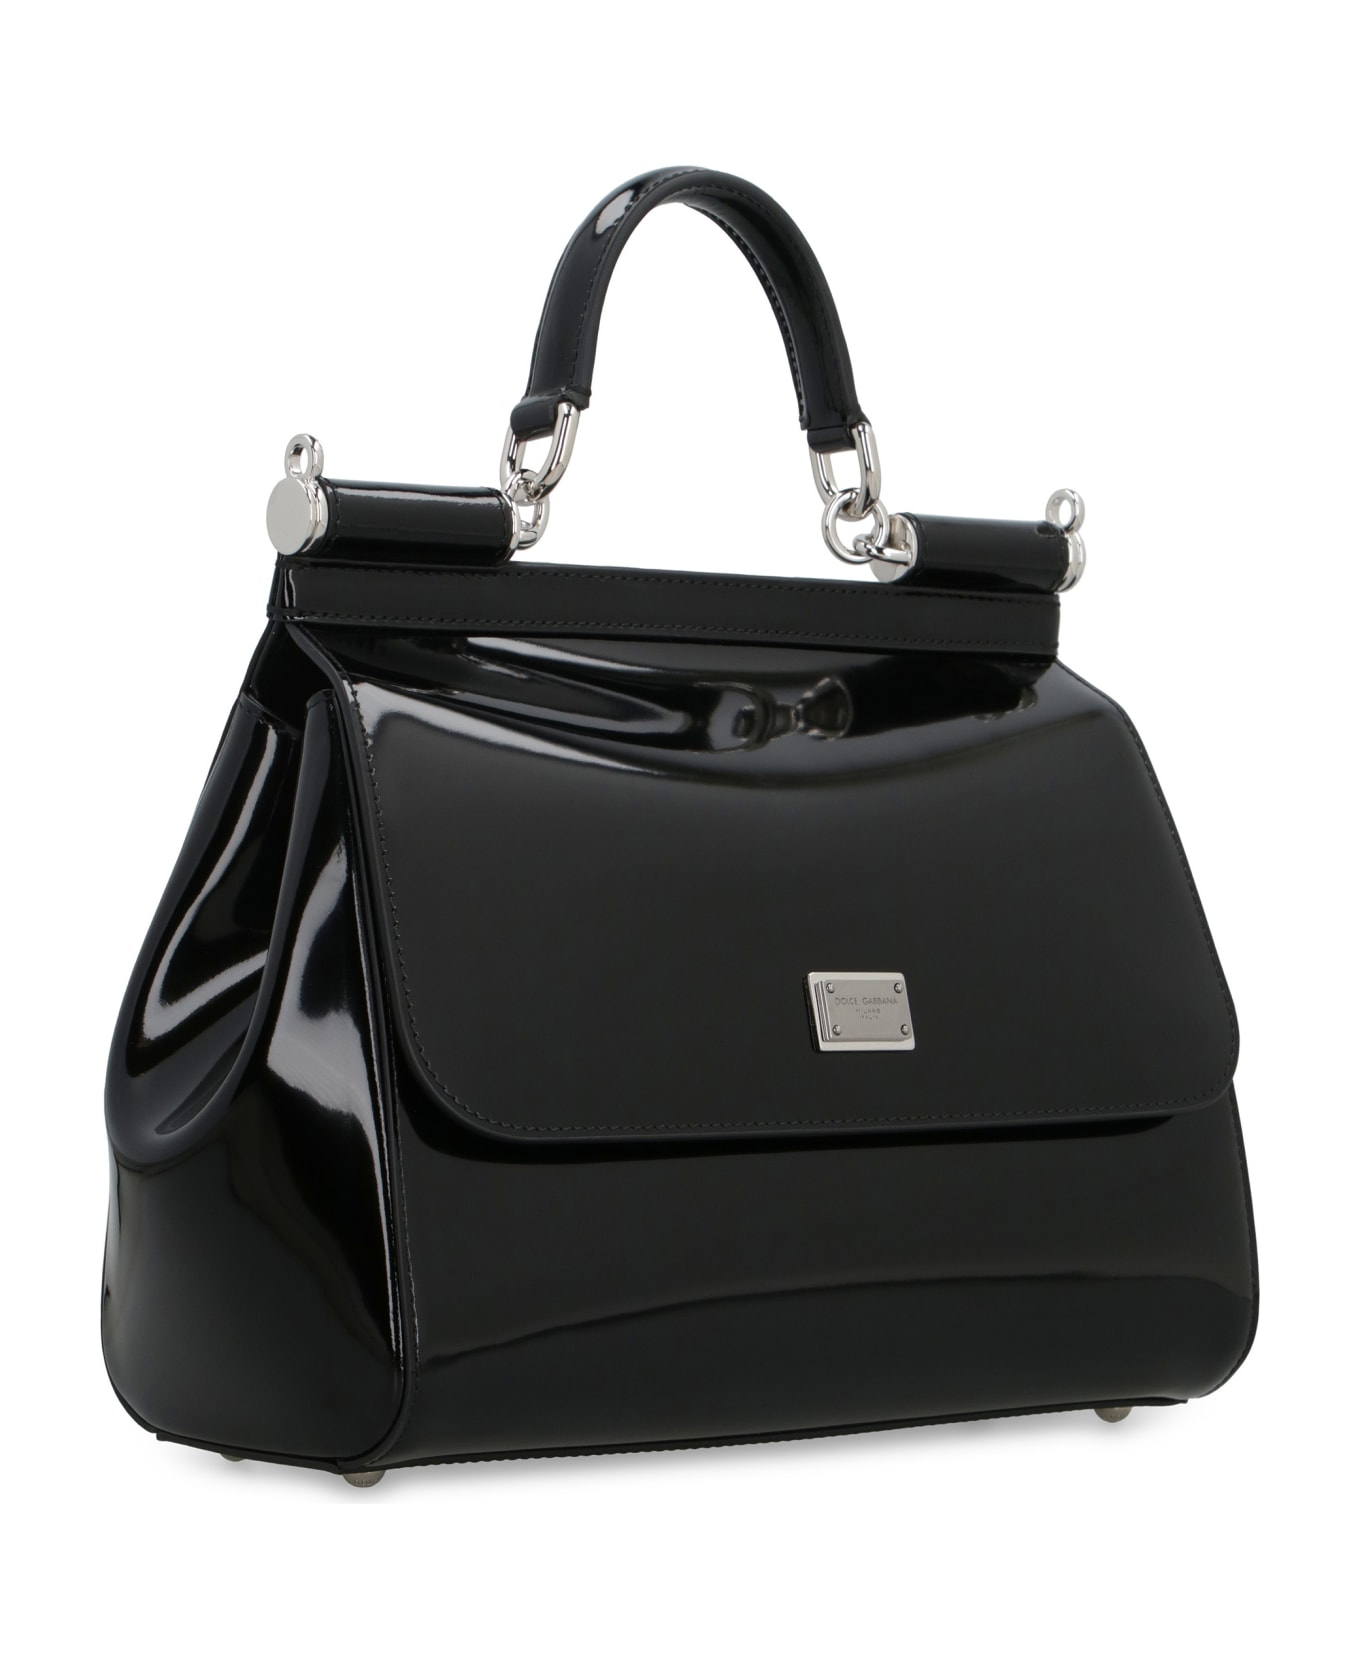 Dolce & Gabbana Kim Dolce&gabbana - Sicily Leather Handbag - black